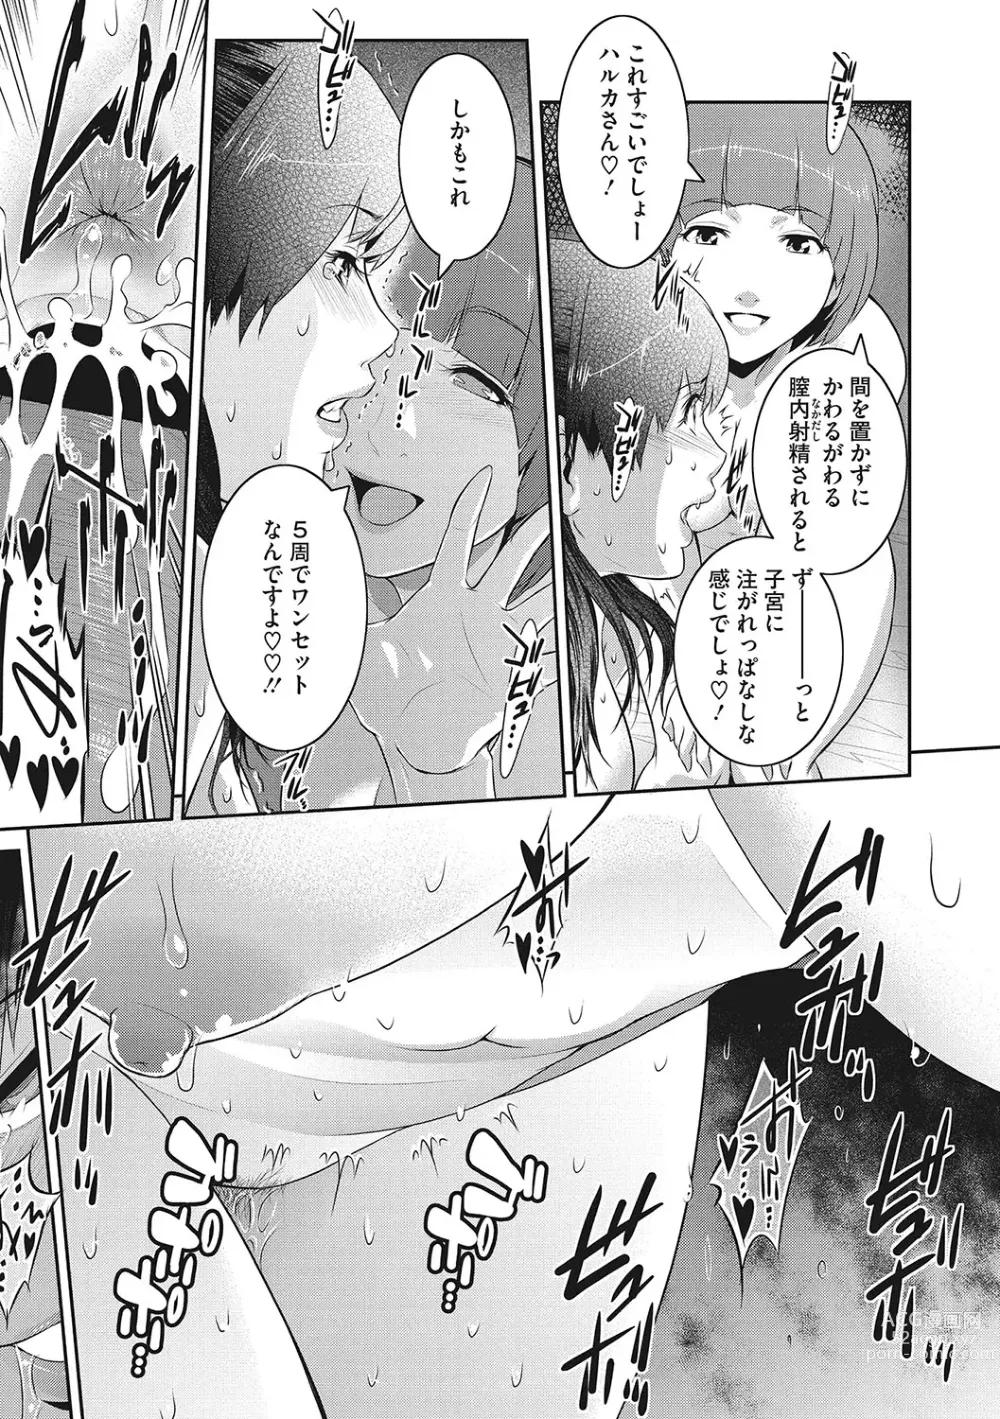 Page 194 of manga Genwaku